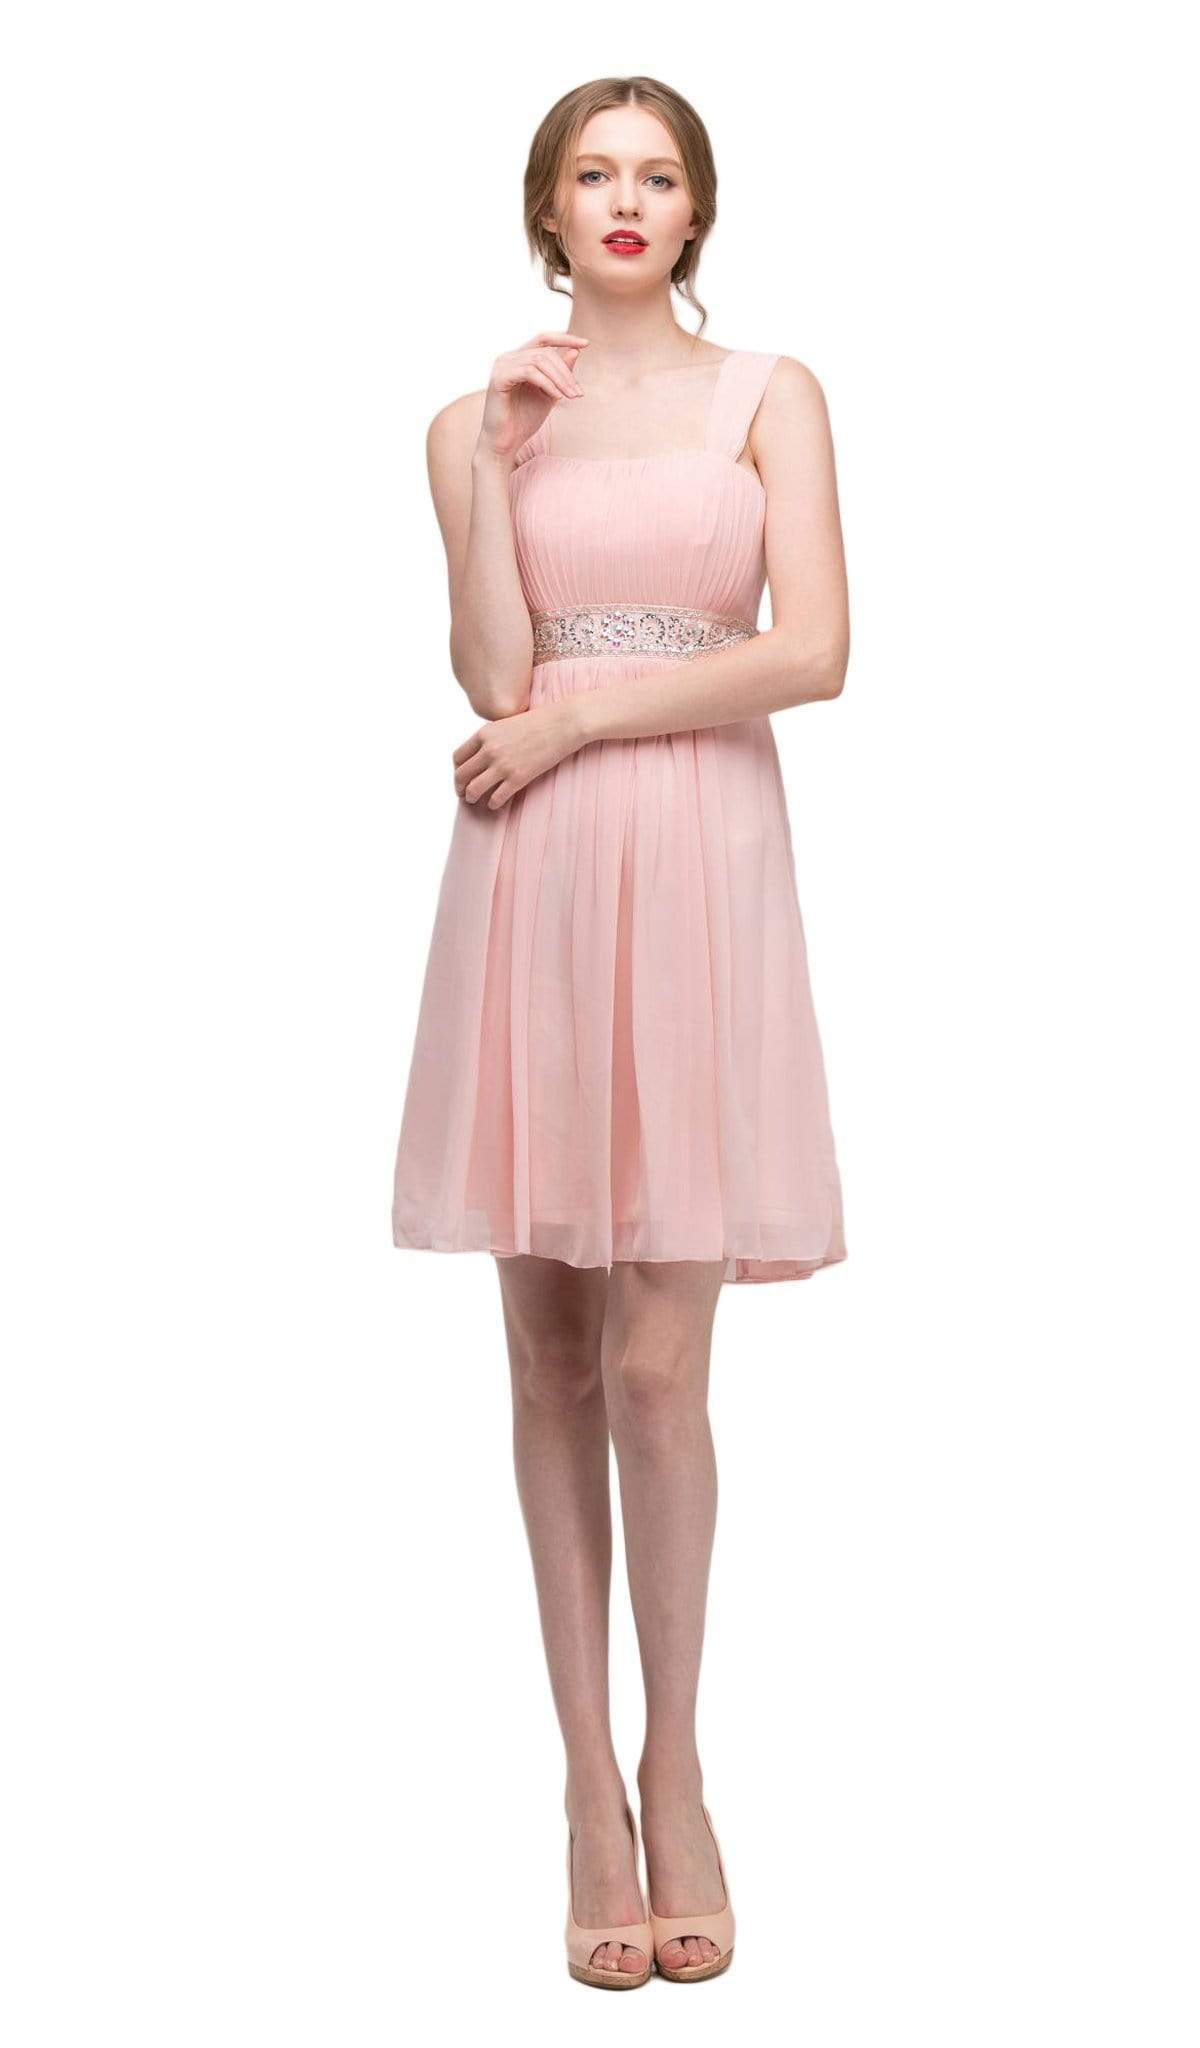 Eureka Fashion - 2450 Embellished Chiffon Knee Length A-line Dress
